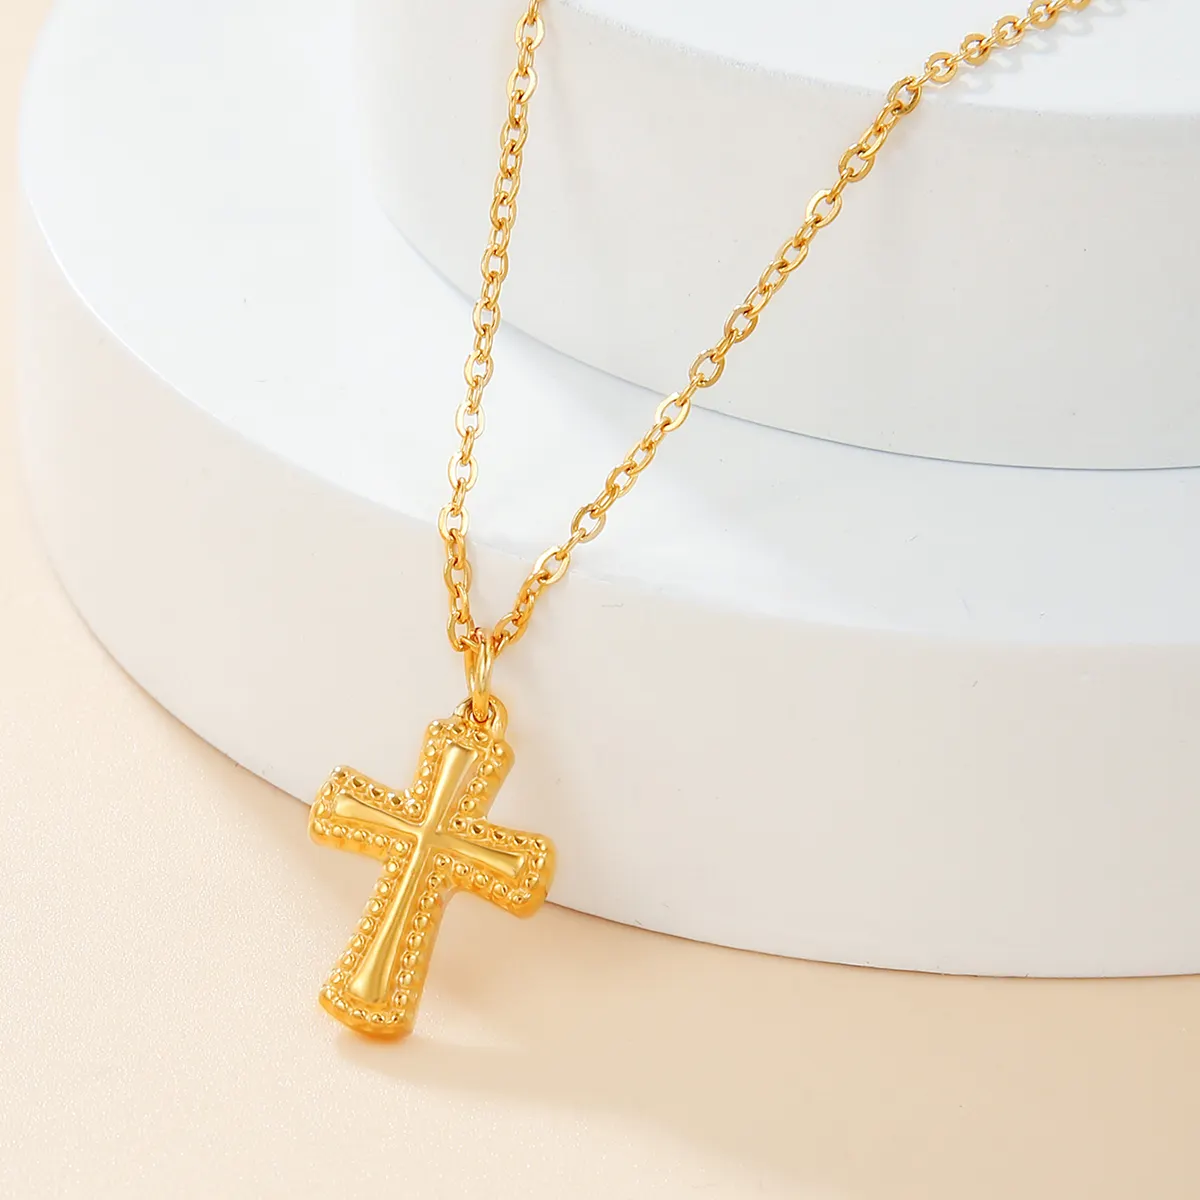 18K 금도금 스테인레스 스틸 작은 십자가 펜던트 목걸이 새로운 디자인 키 패턴 종교 선물 약혼 보석 세트